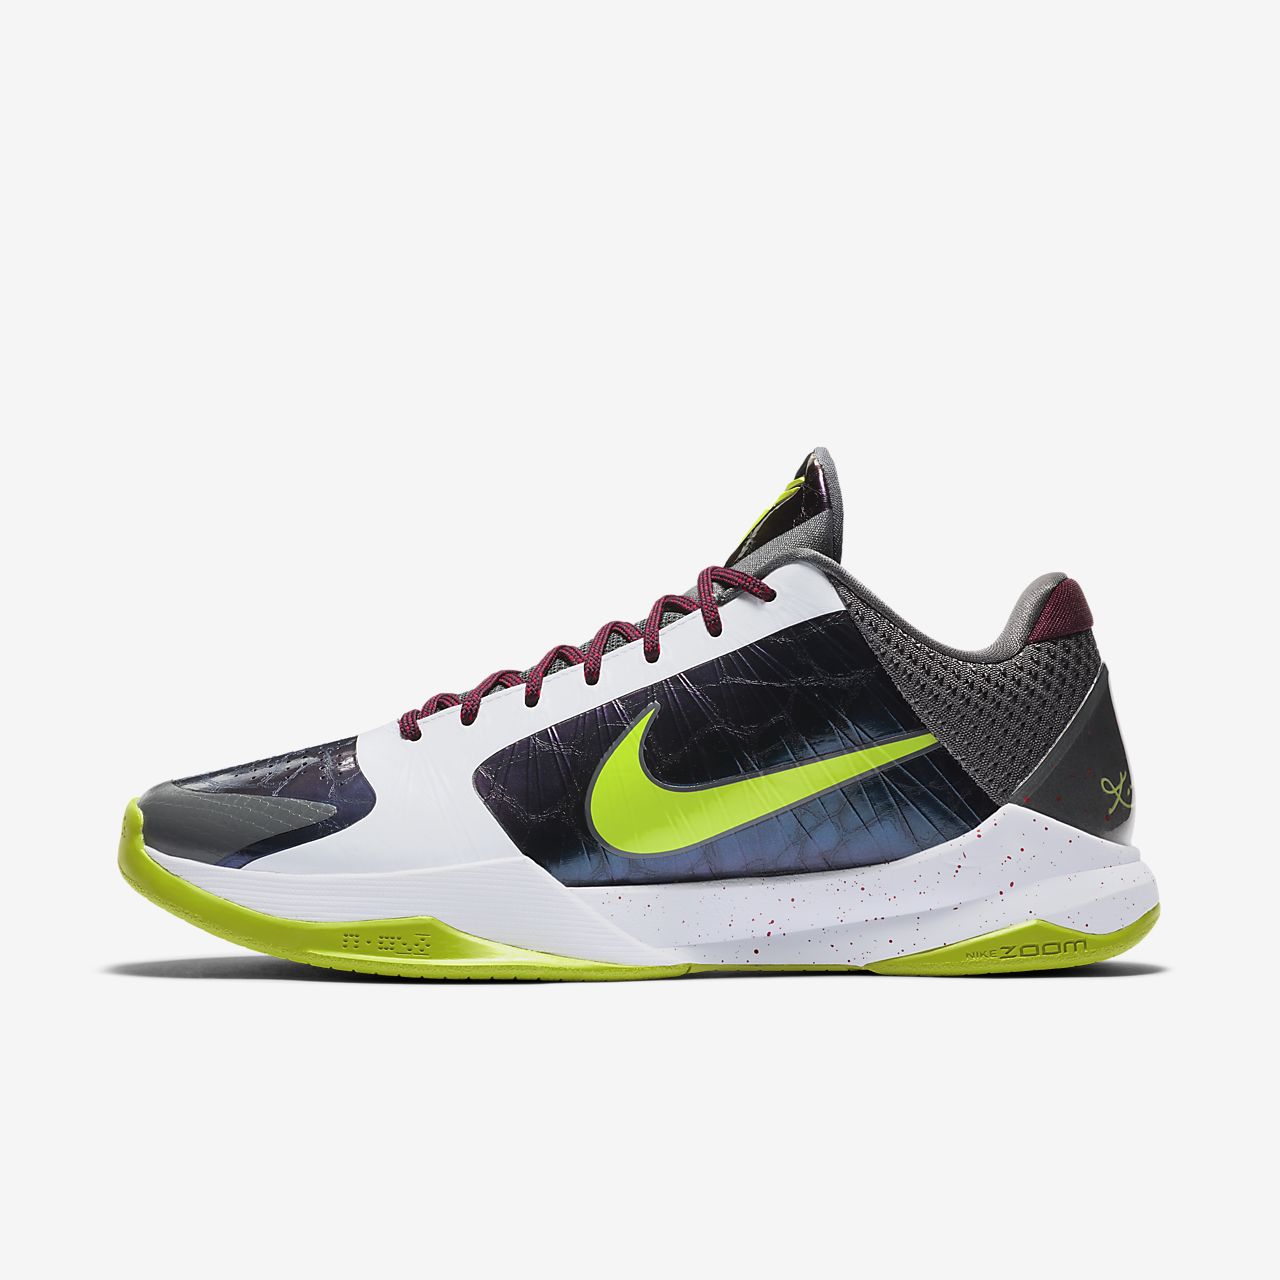 Nike Zoom Kobe V PROTRO - Dec 2019 | NikeTalk